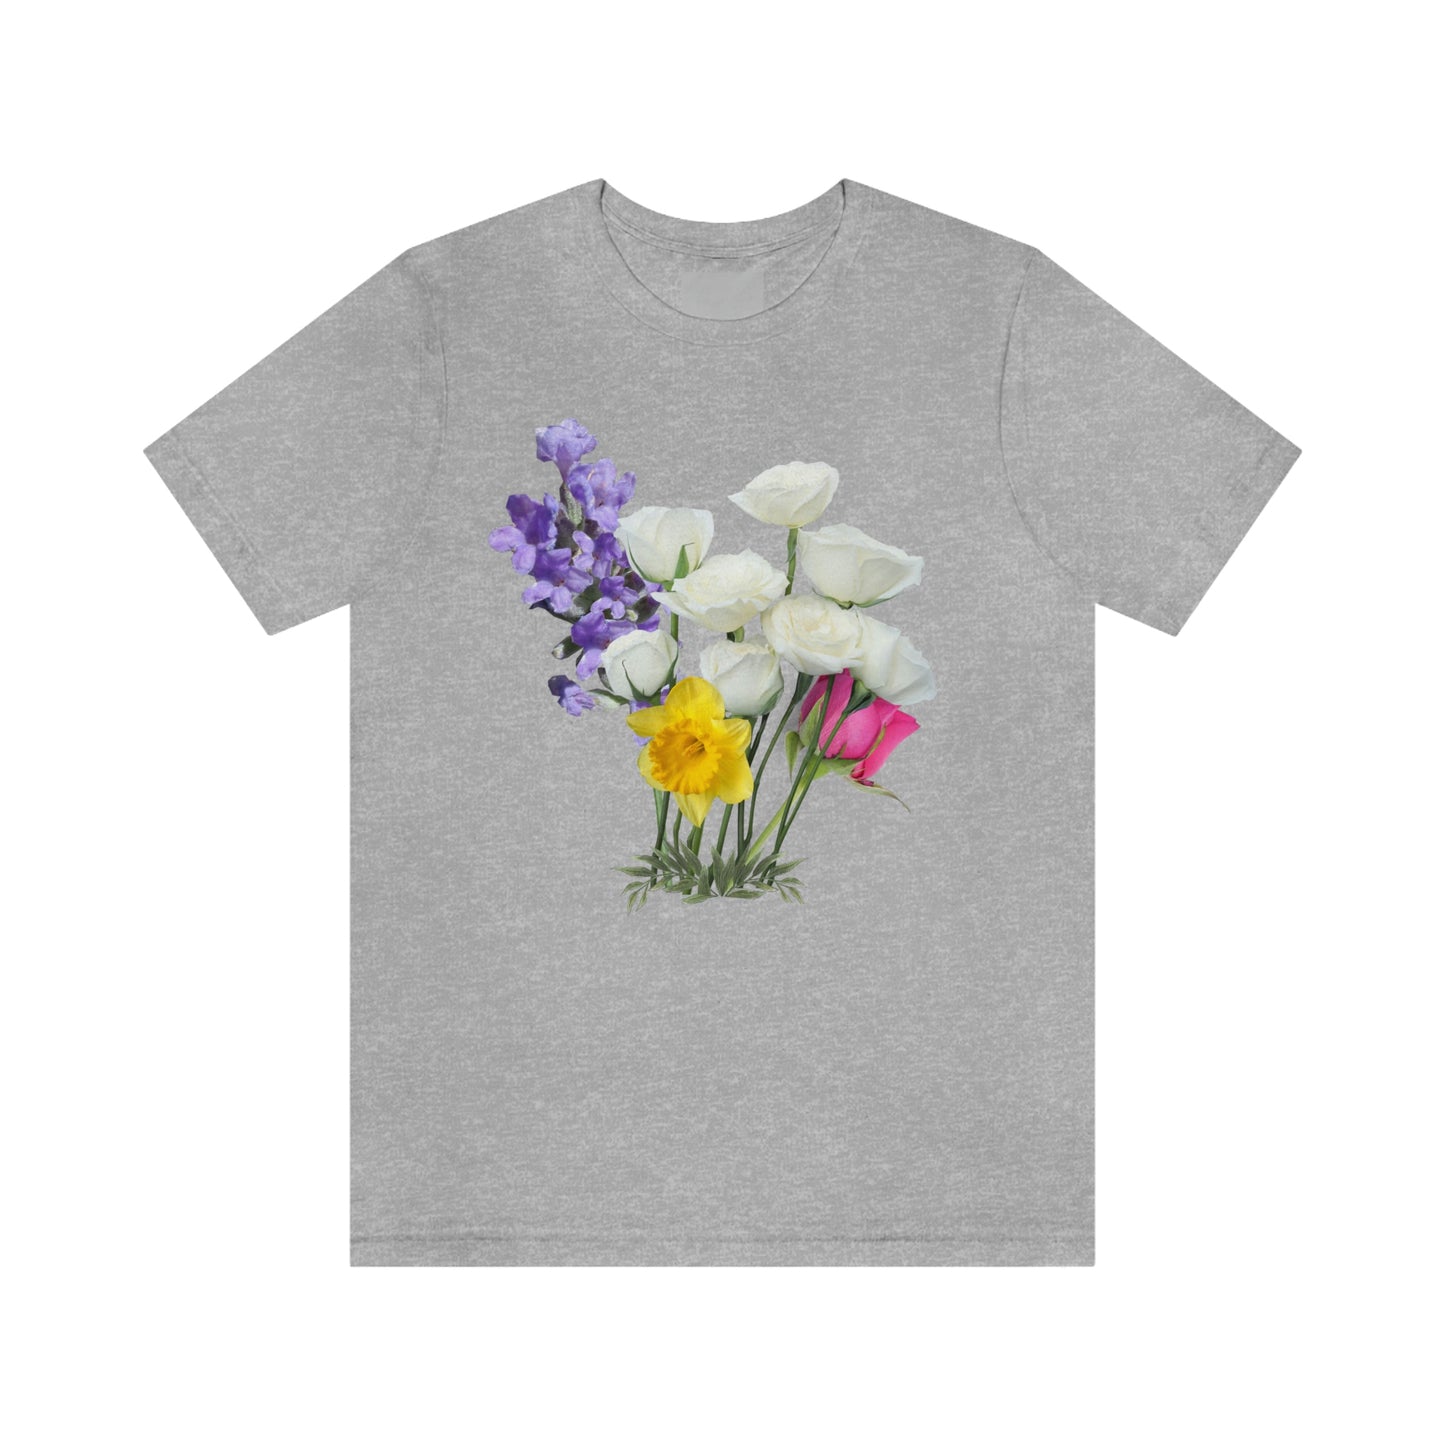 Cute Flower shirt - Nature lover Shirt - Flower lover shirt